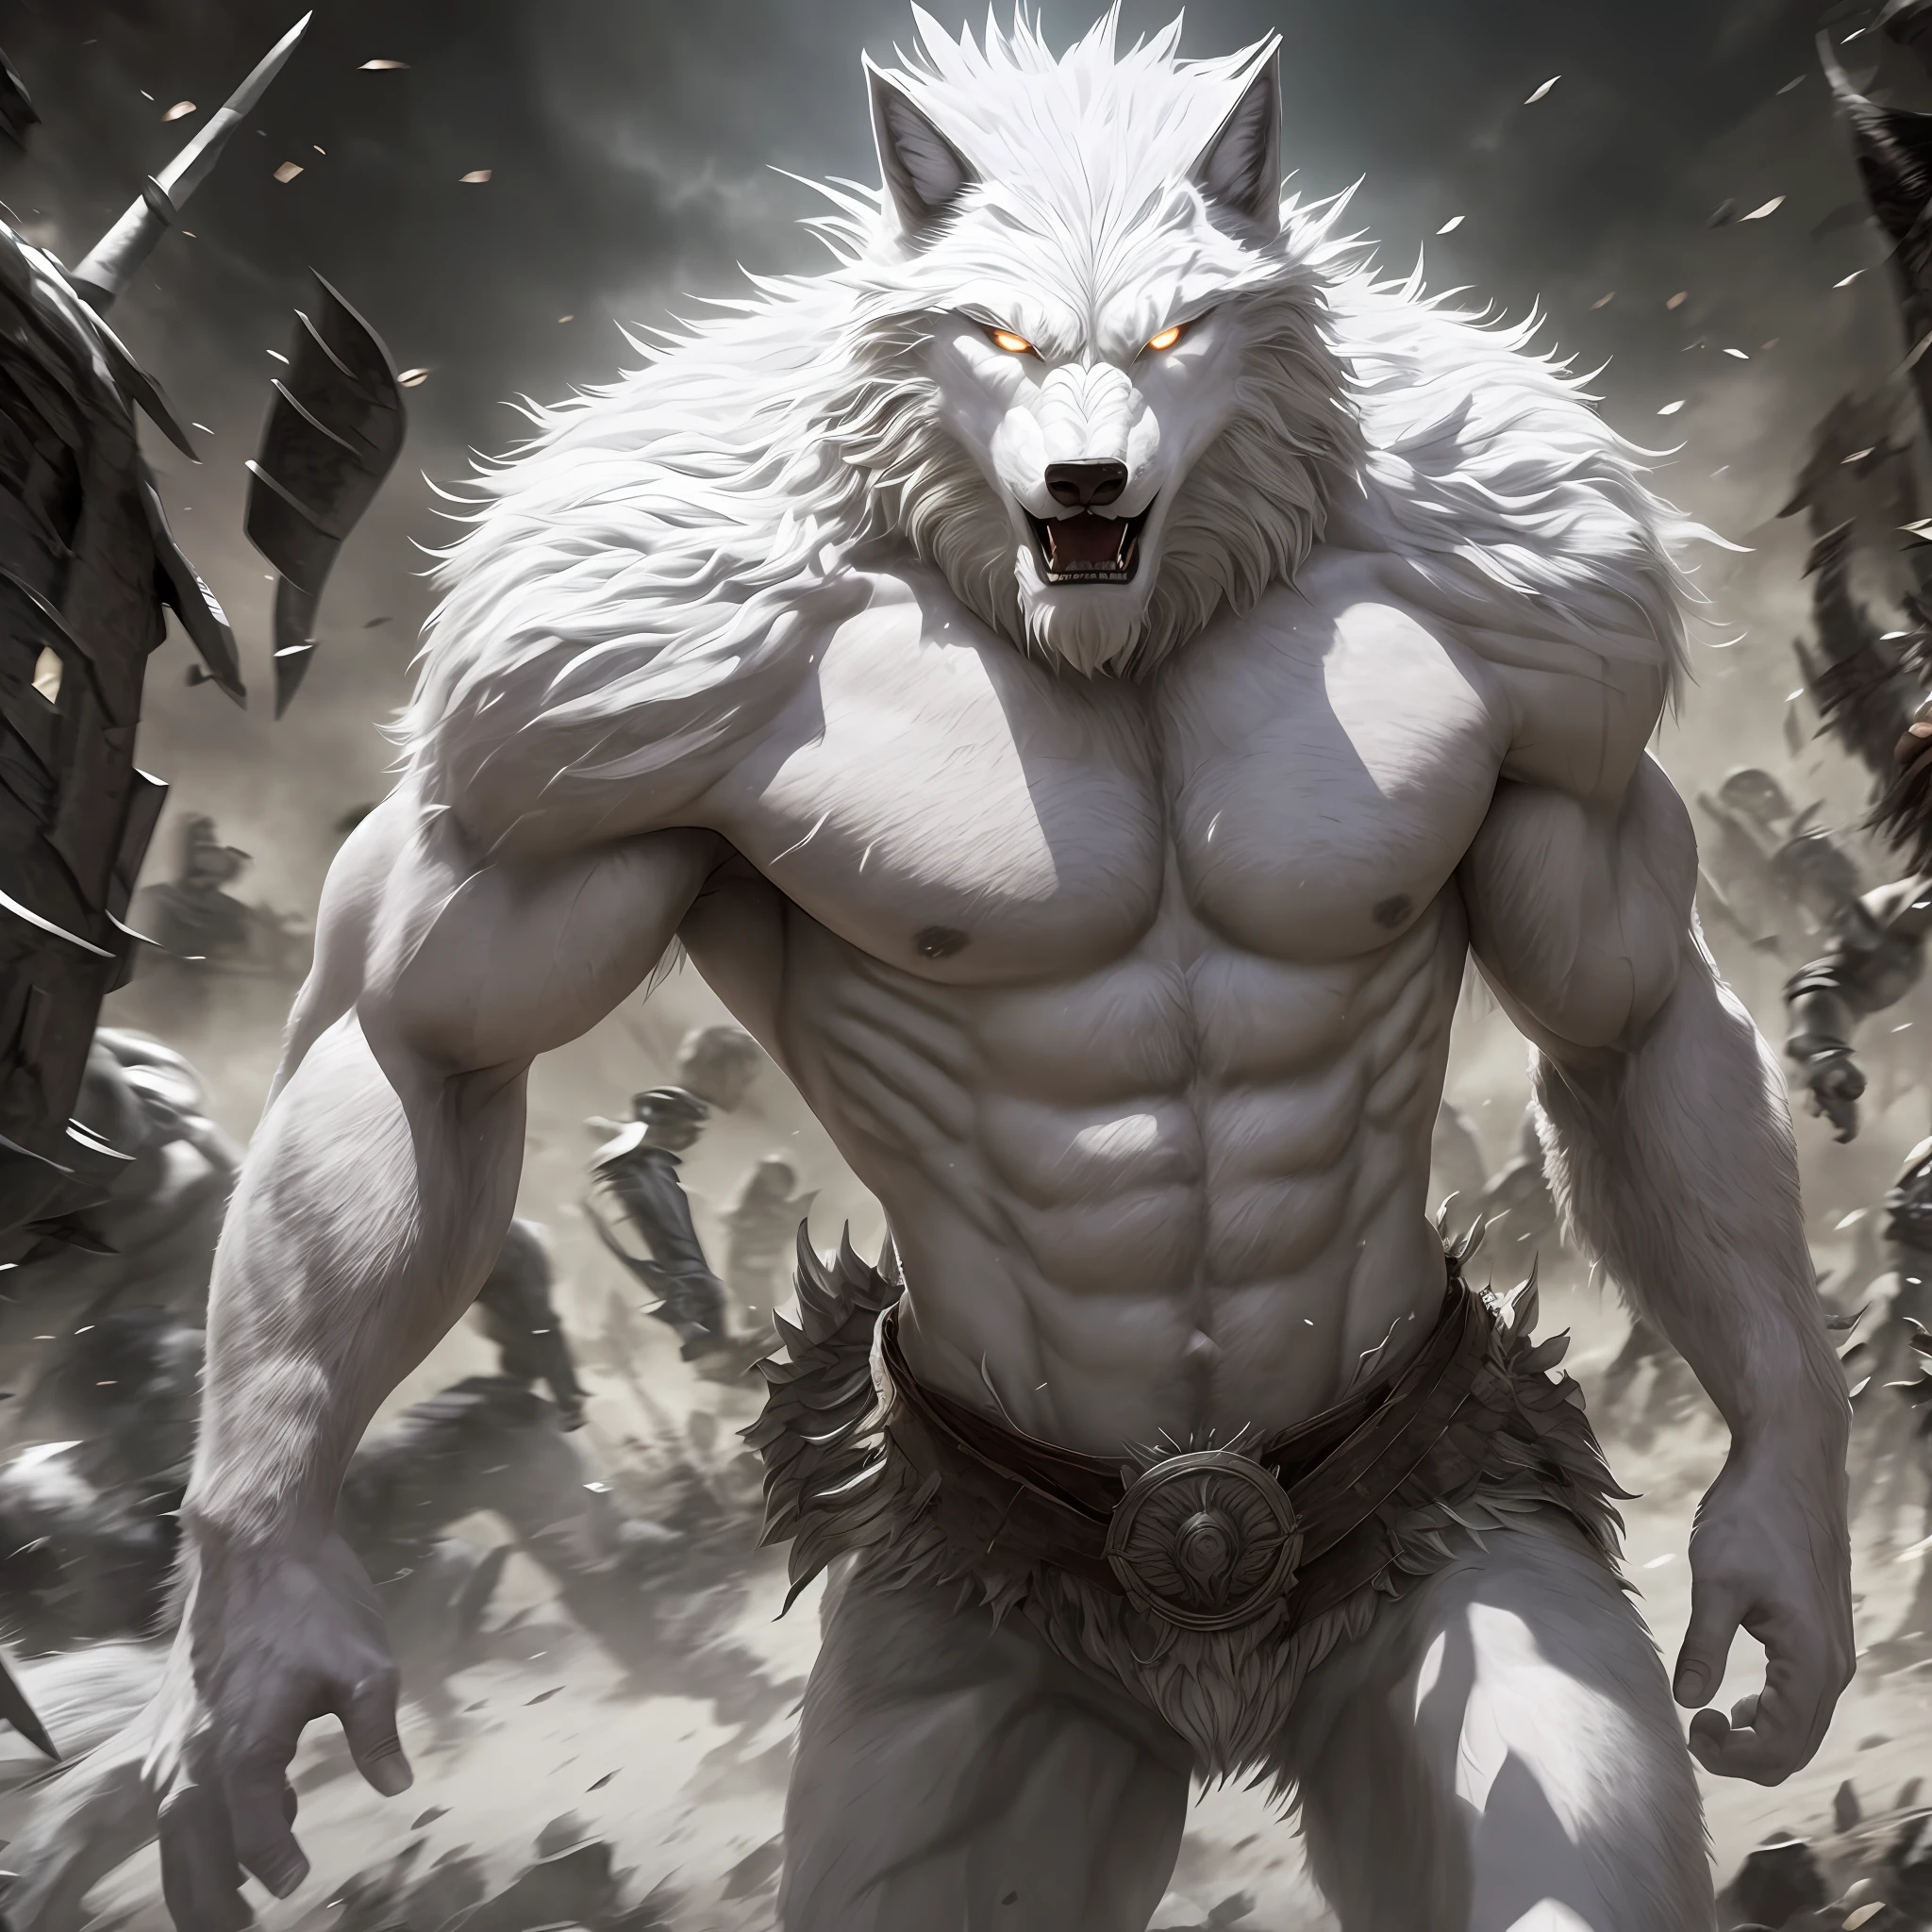 여러 사람과의 전투 중에 하얀 늑대인간으로 변하는 남자, 현실적인, 풀 HD, 최고의 품질